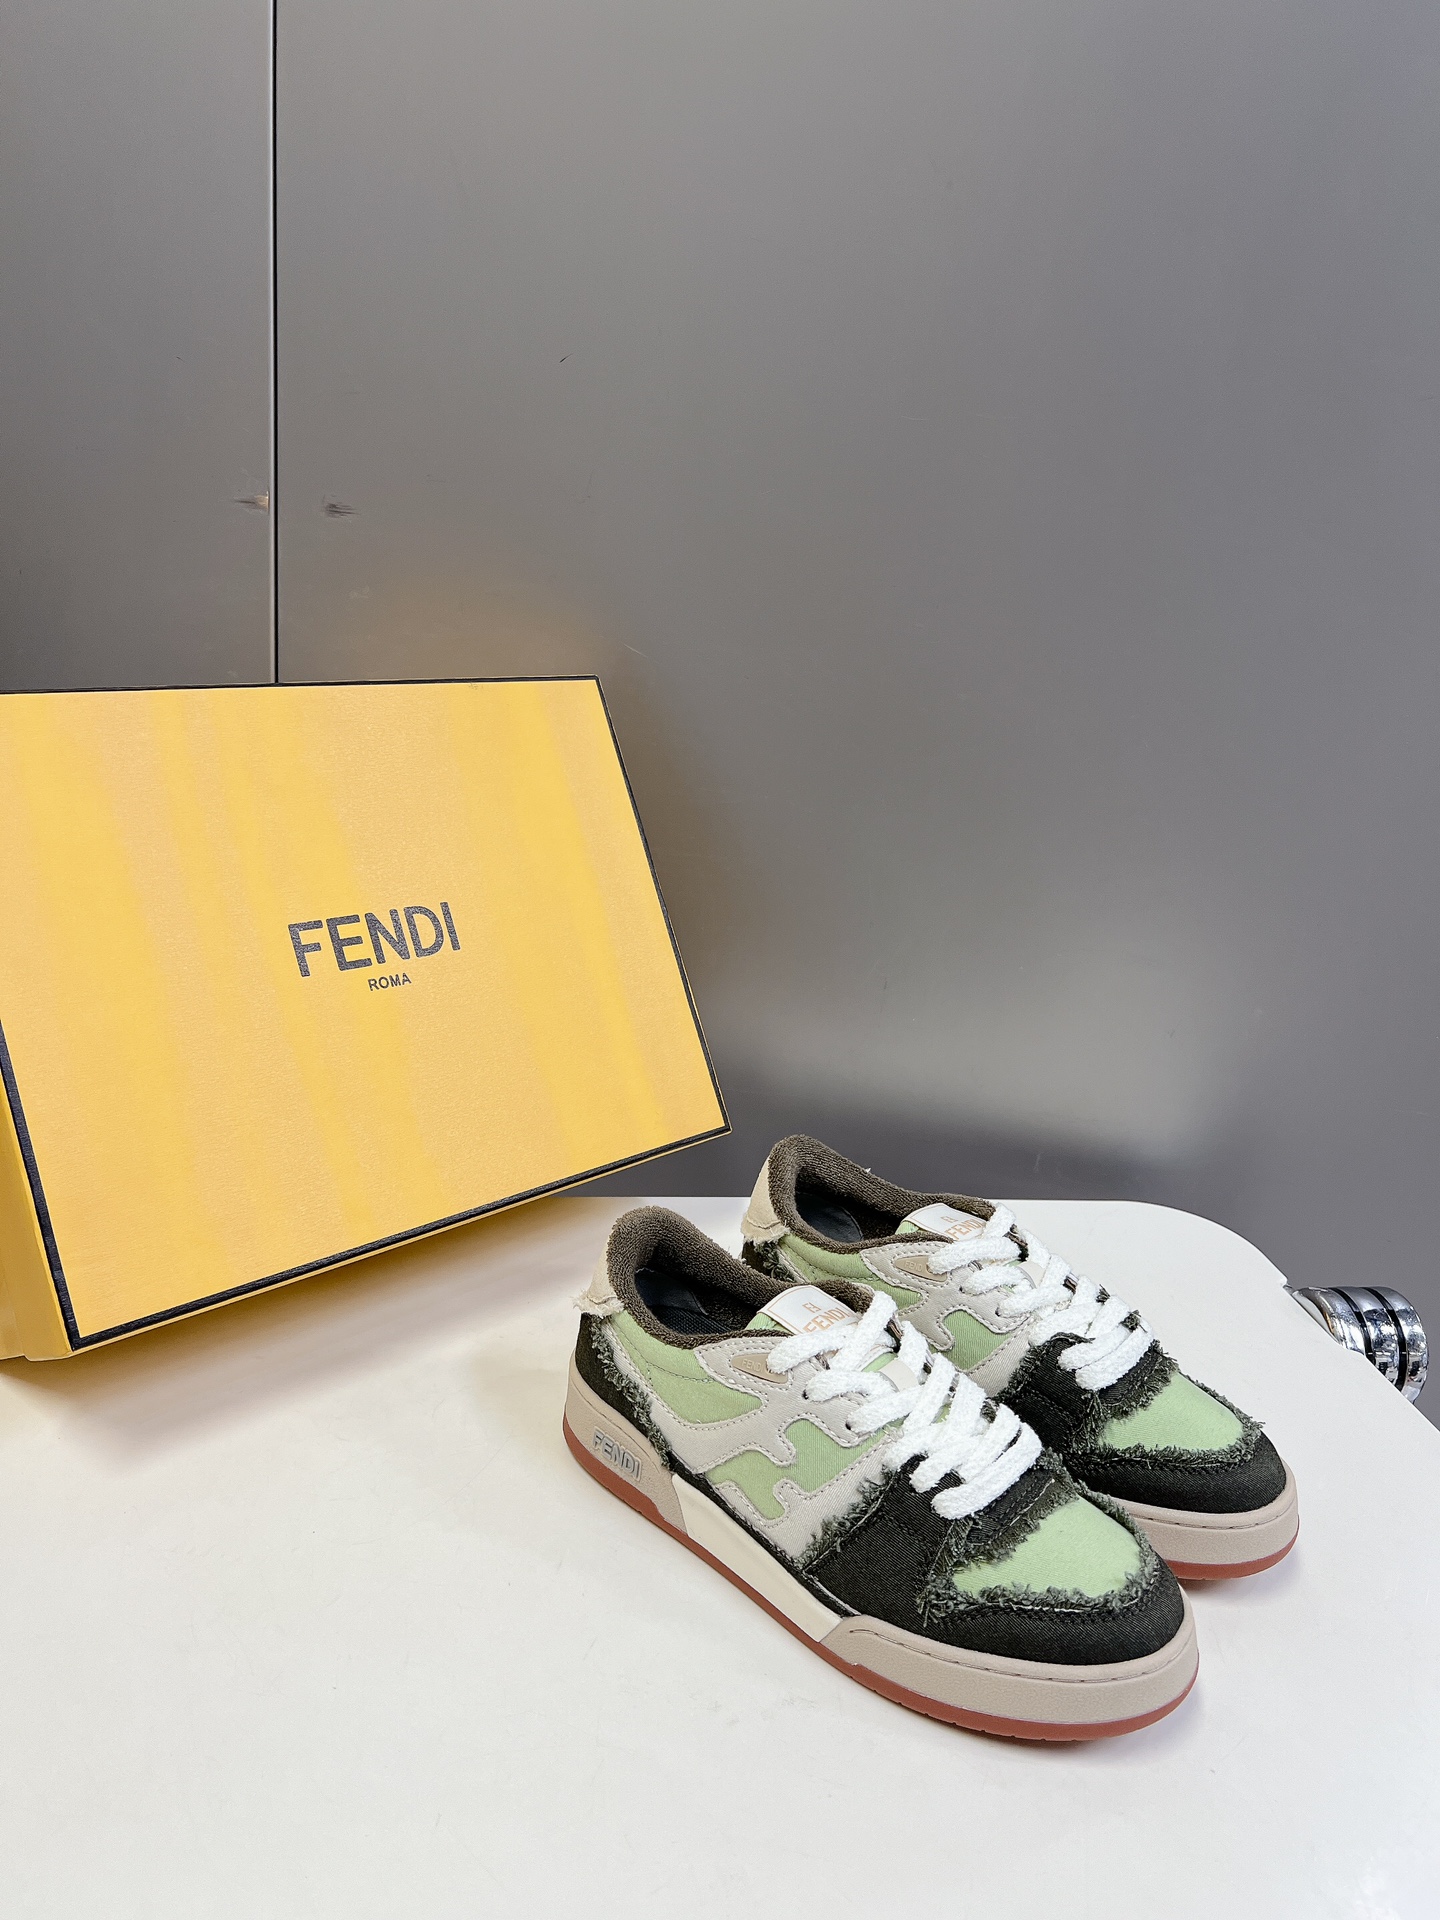 男装10Fendi芬迪爆款系列情侣休闲运动鞋FDmatch原版RMB7300购入一比一复刻设计师KimJ